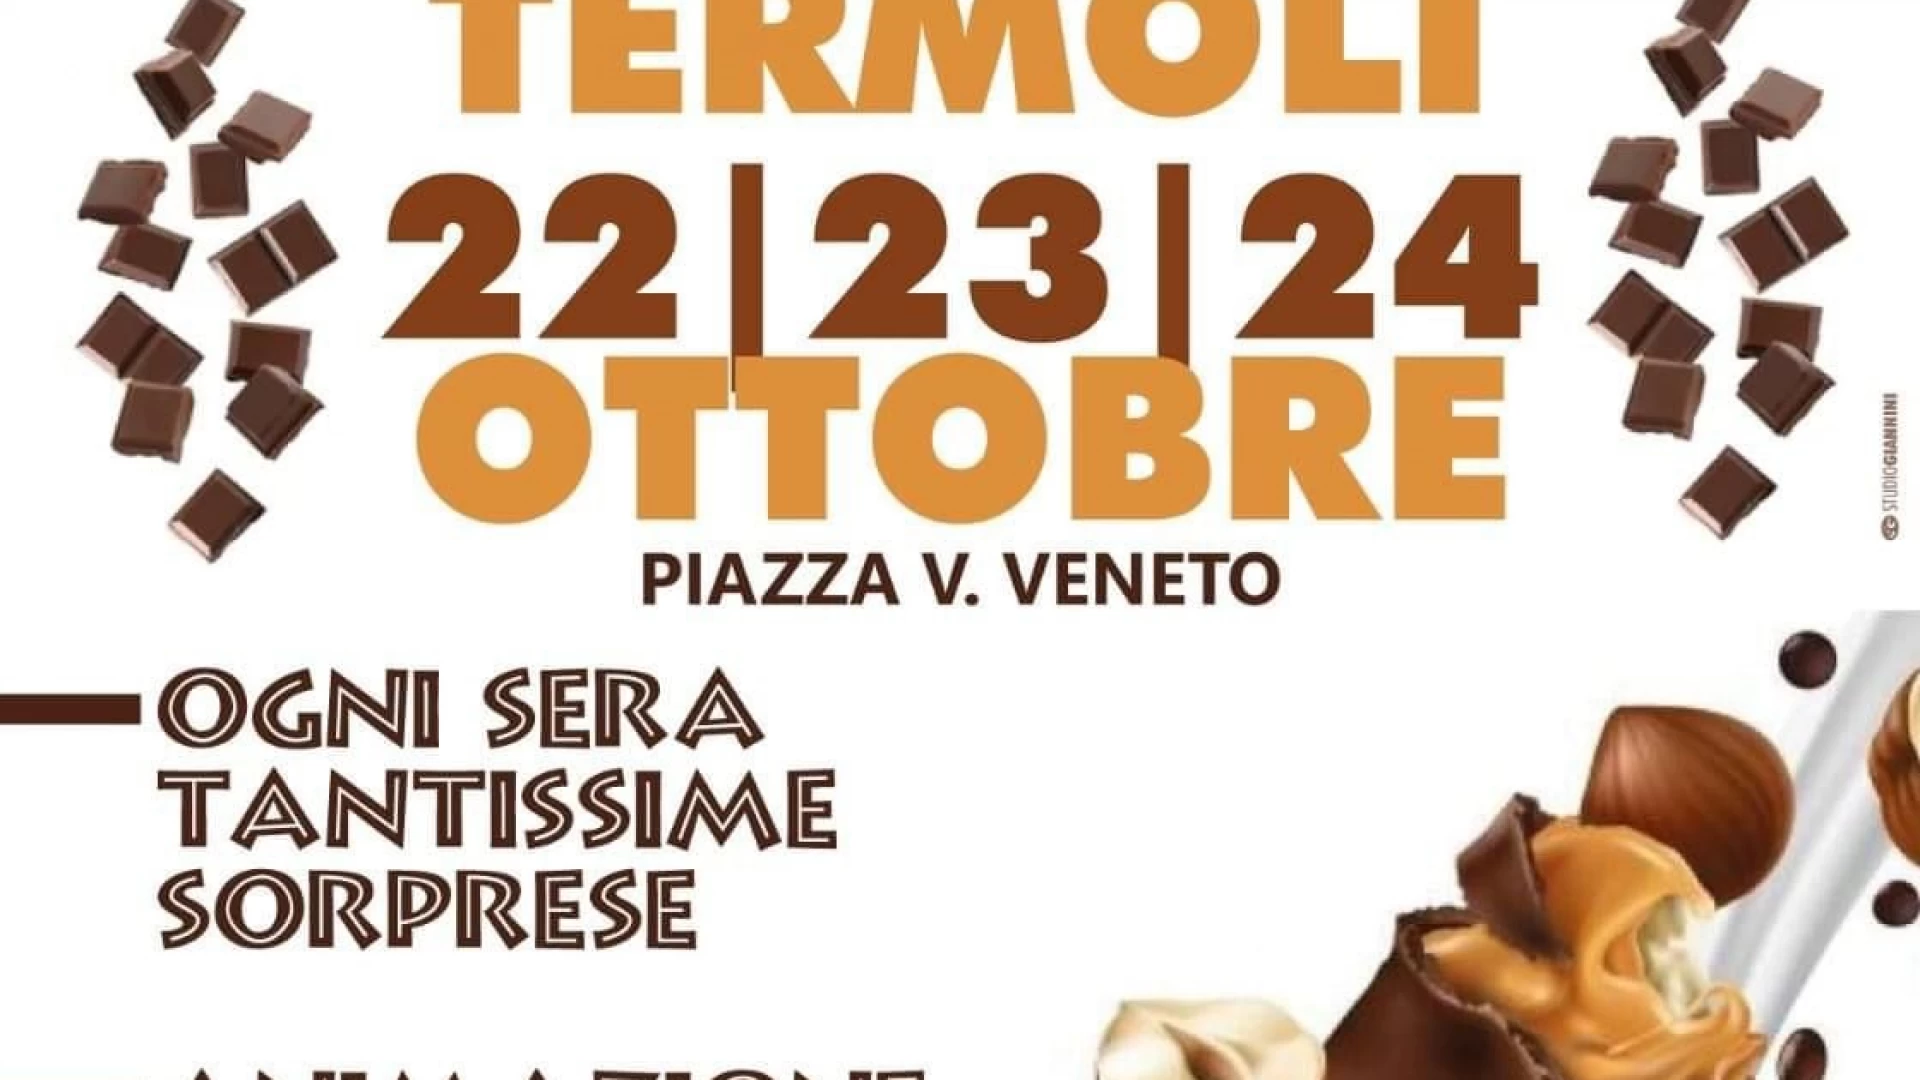 Termoli: festa del cioccolato, l’inaugurazione venerdì alle ore 17.